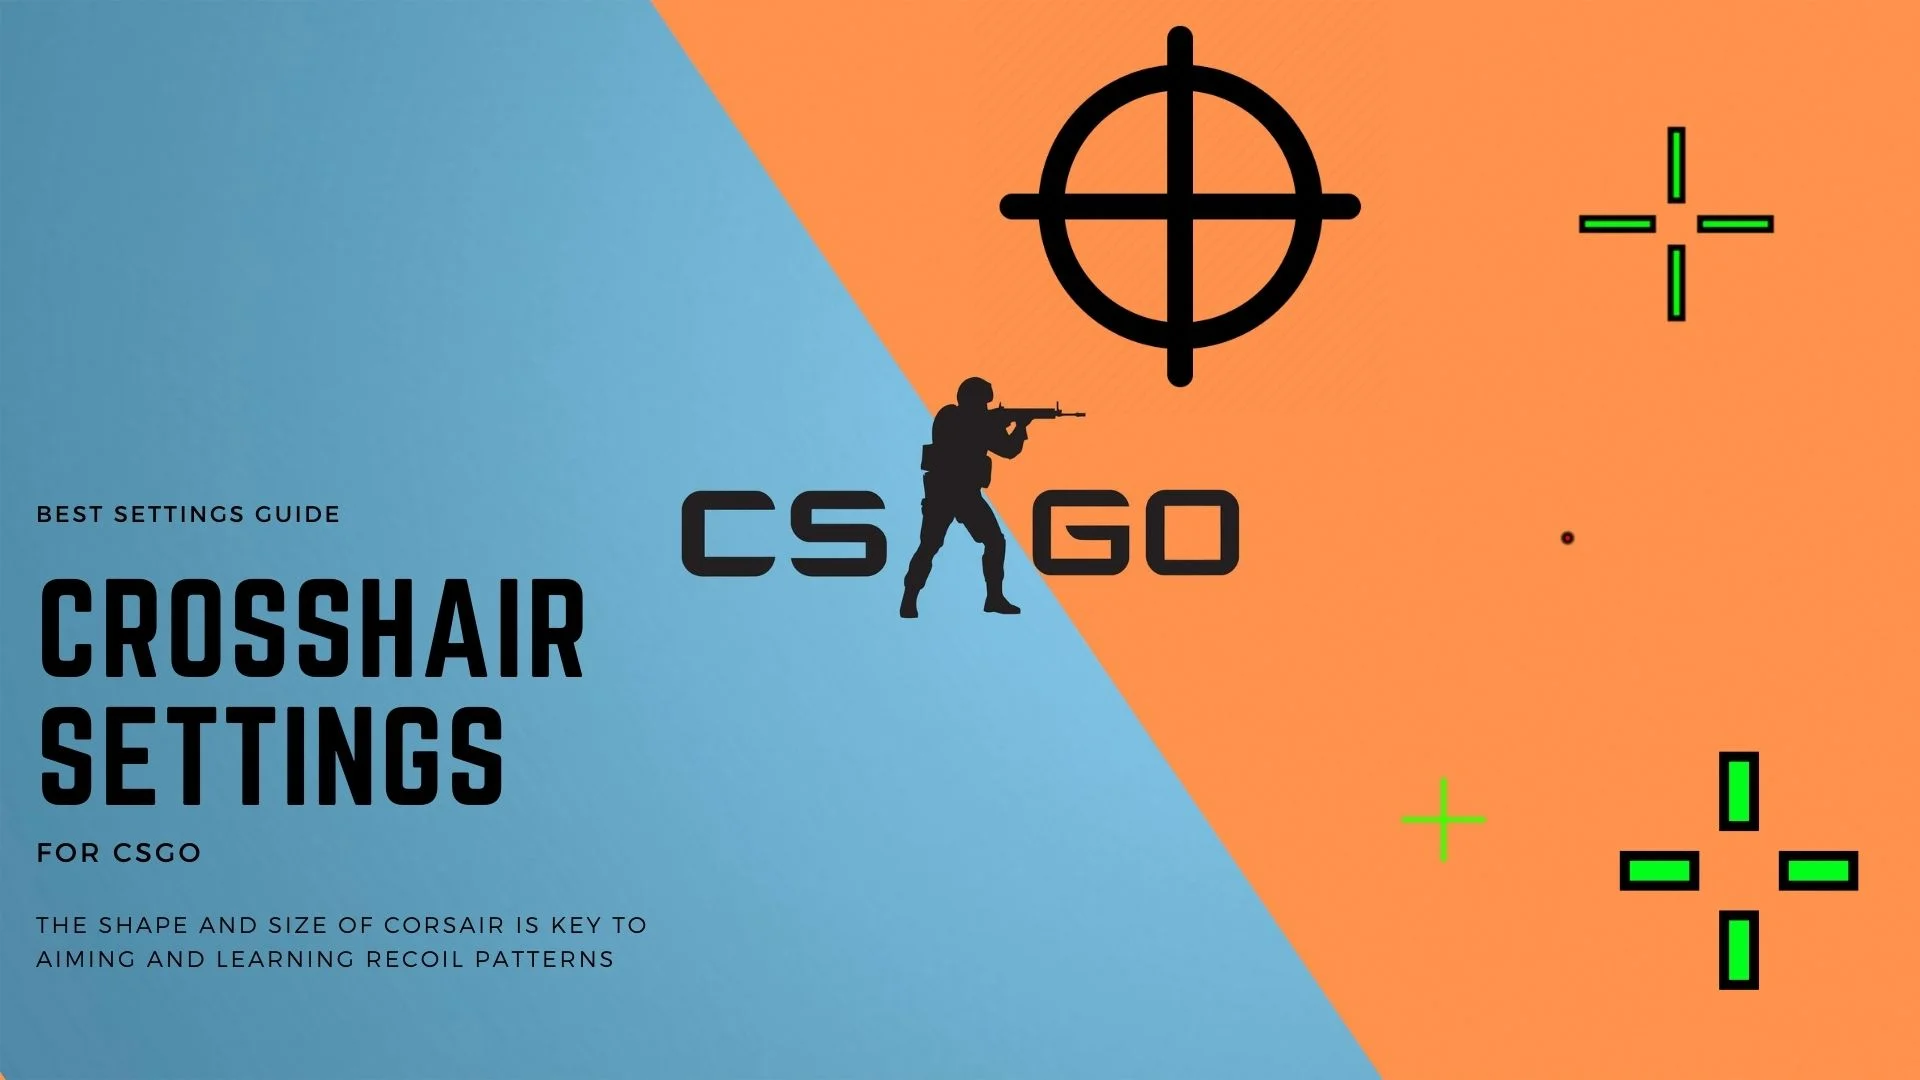 Crosshair-inställningar för CSGO